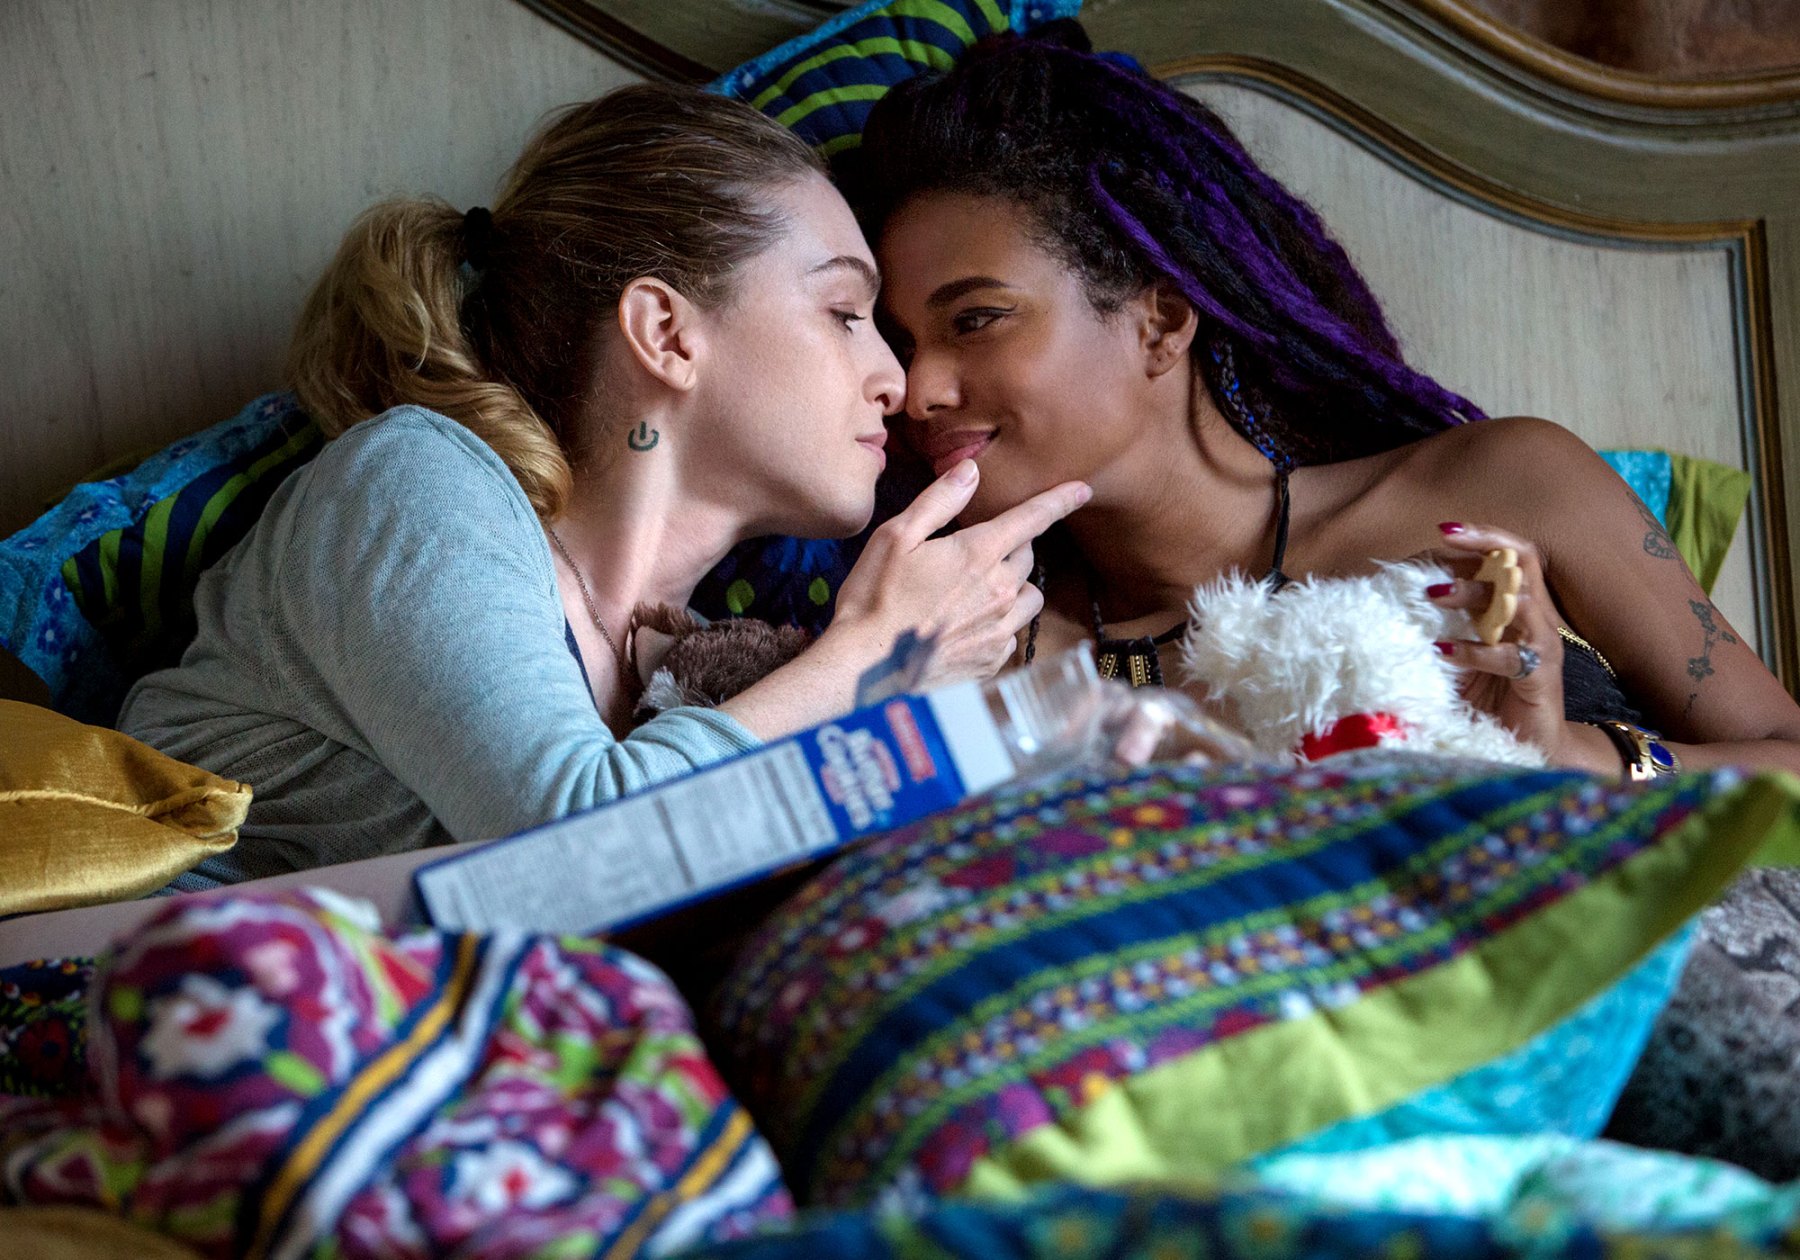 Lesbian part 1. Фрима Аджьеман с Джейми Клейтон.